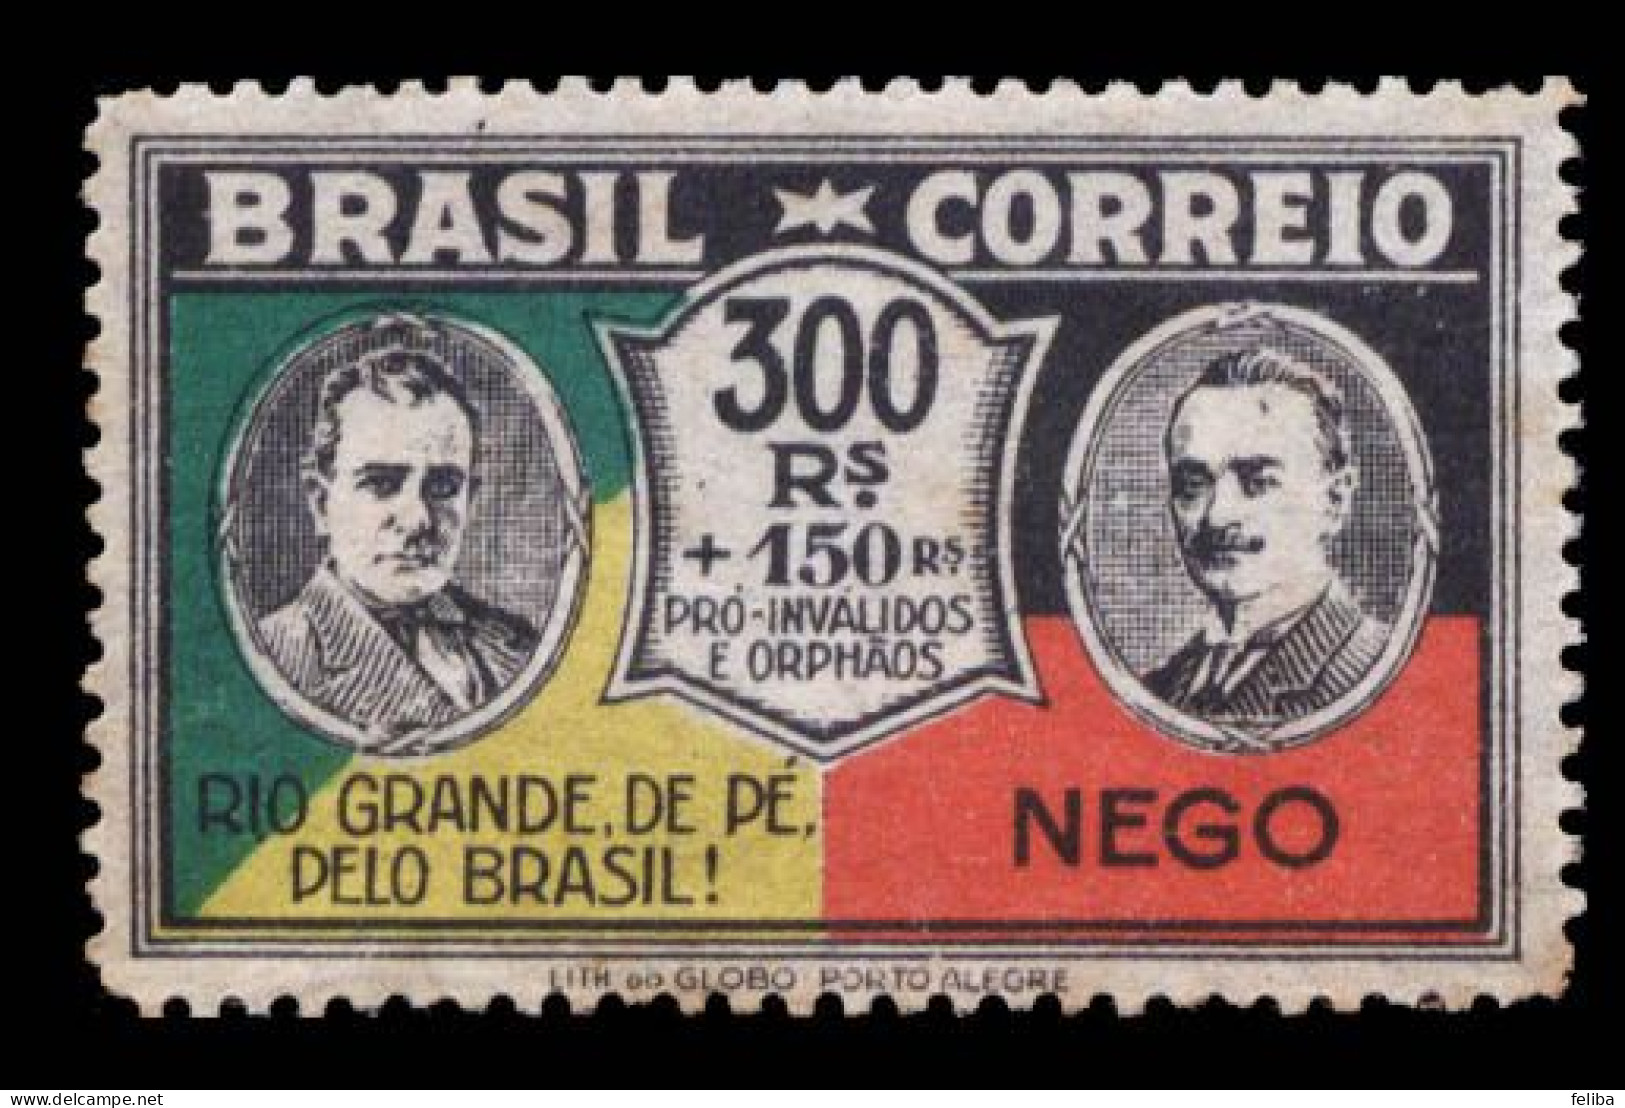 Brazil 1931 Unused - Ungebraucht